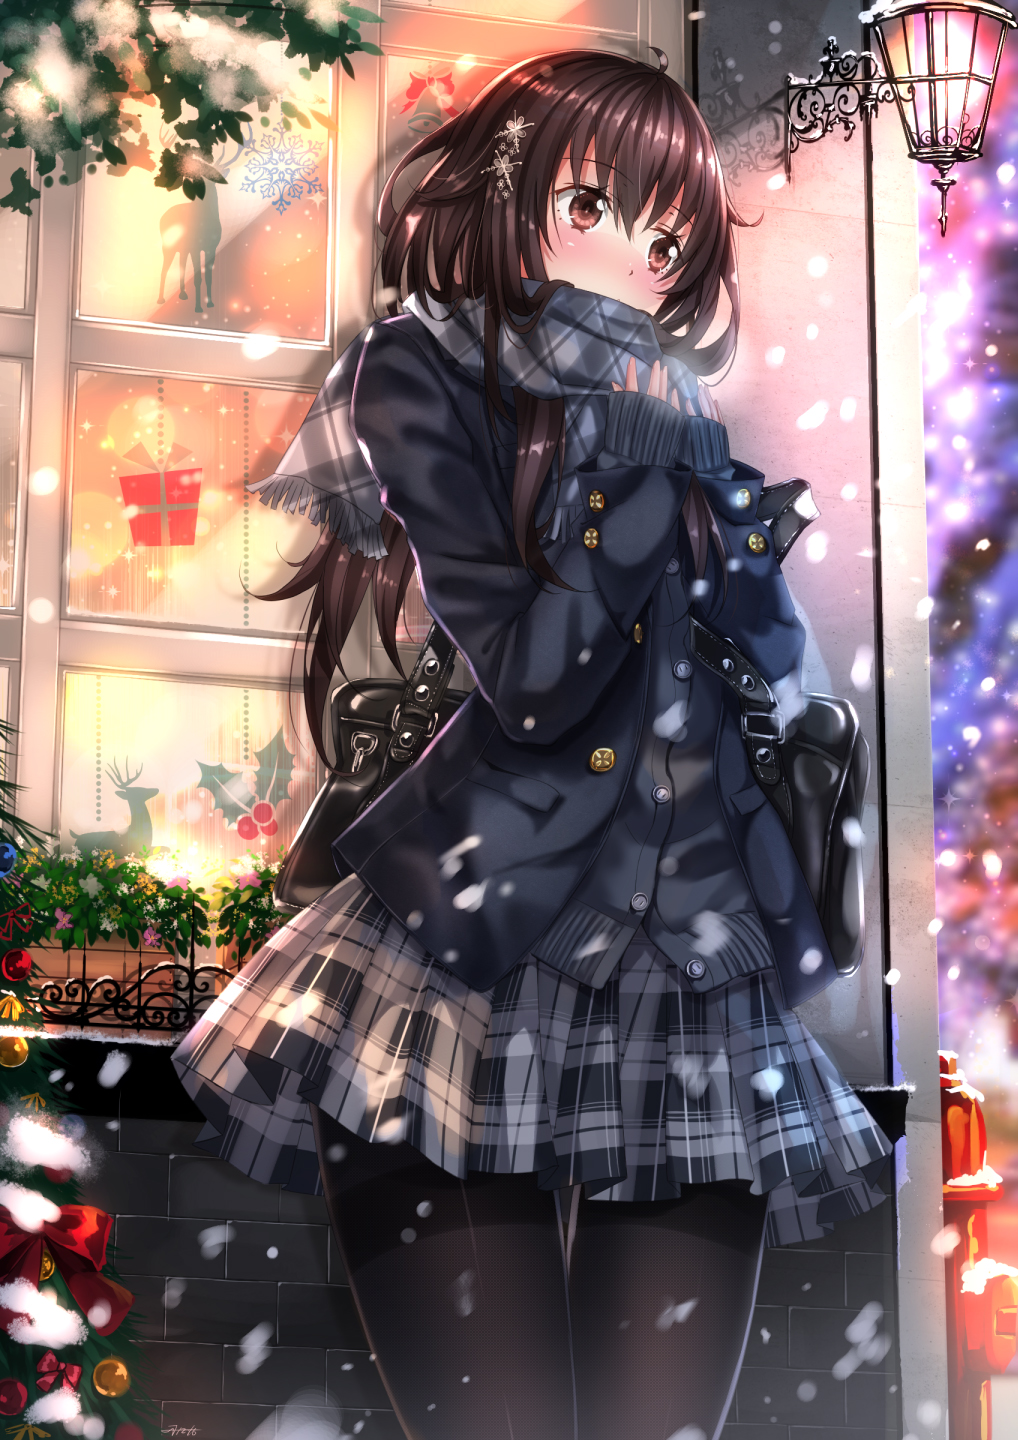 ギュッと抱きしめてあげたい 雪の中にたたずむ美少女のイラストまとめの画像 07 Yuki